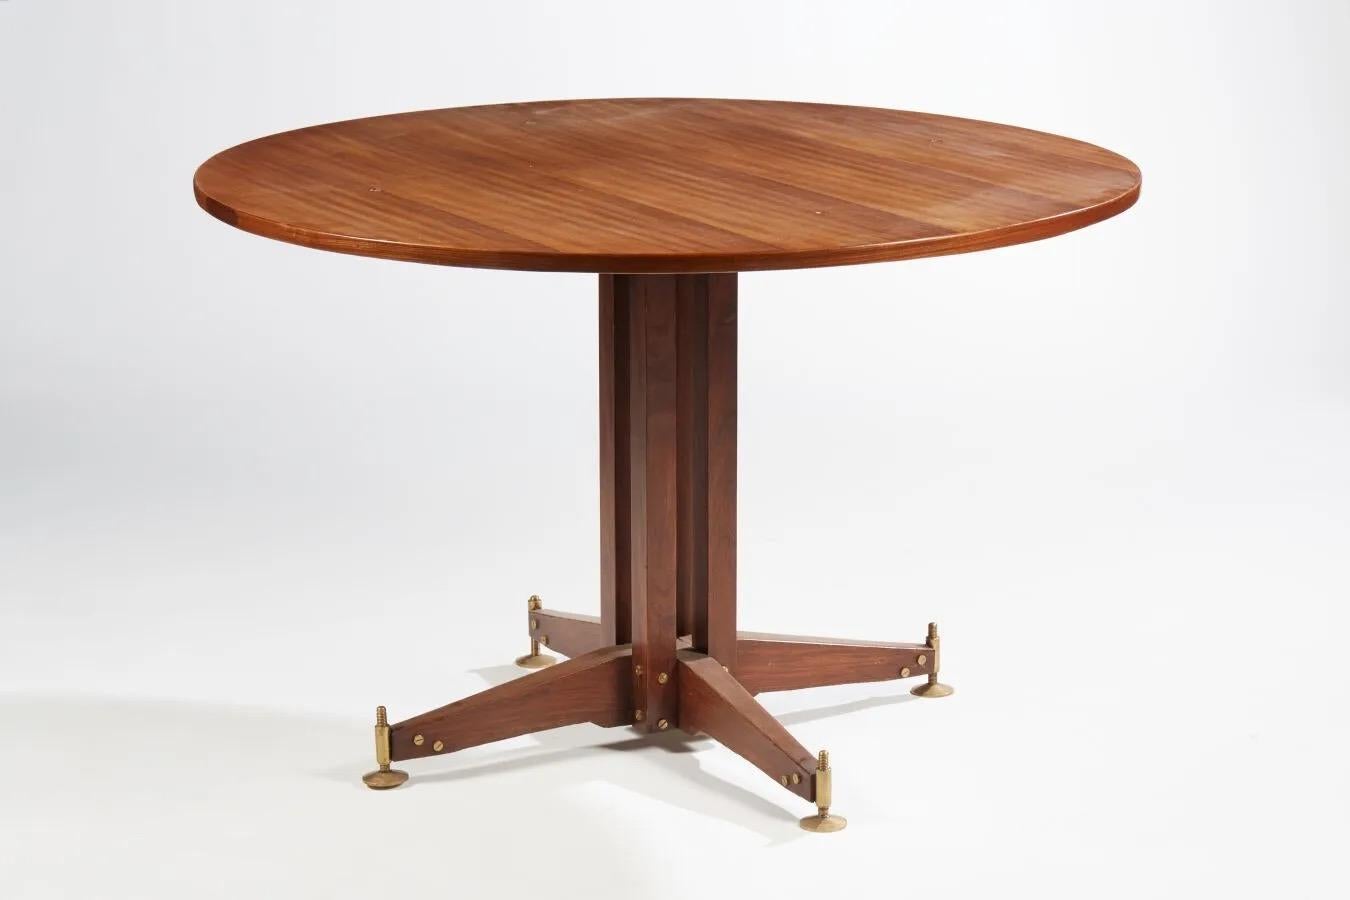 Table de salle à manger circulaire en bois de rose
Production italienne, 1960

Vis en laiton sur les pieds pour régler la hauteur